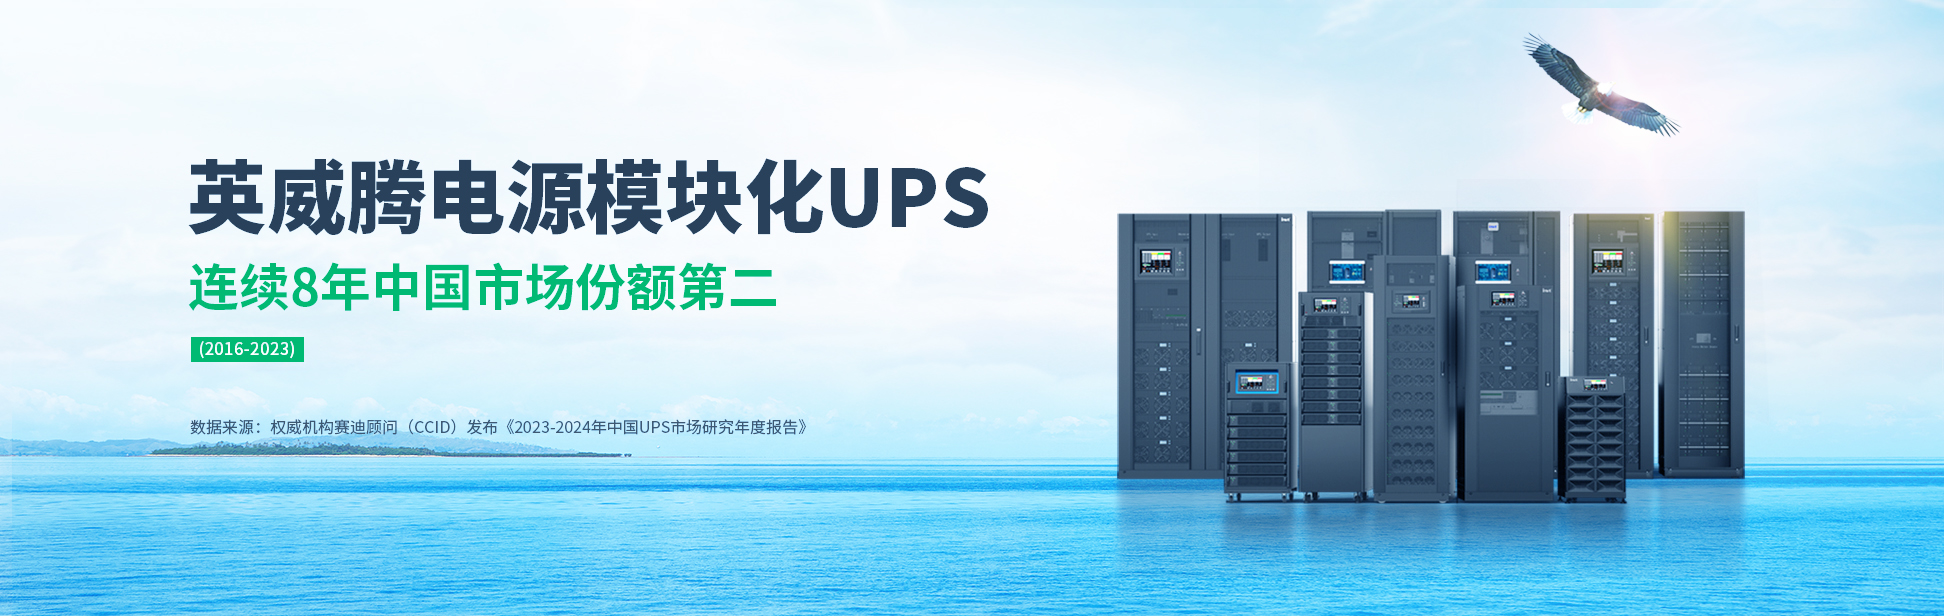 英威腾电源模块化UPS连续8年中国市场份额第二